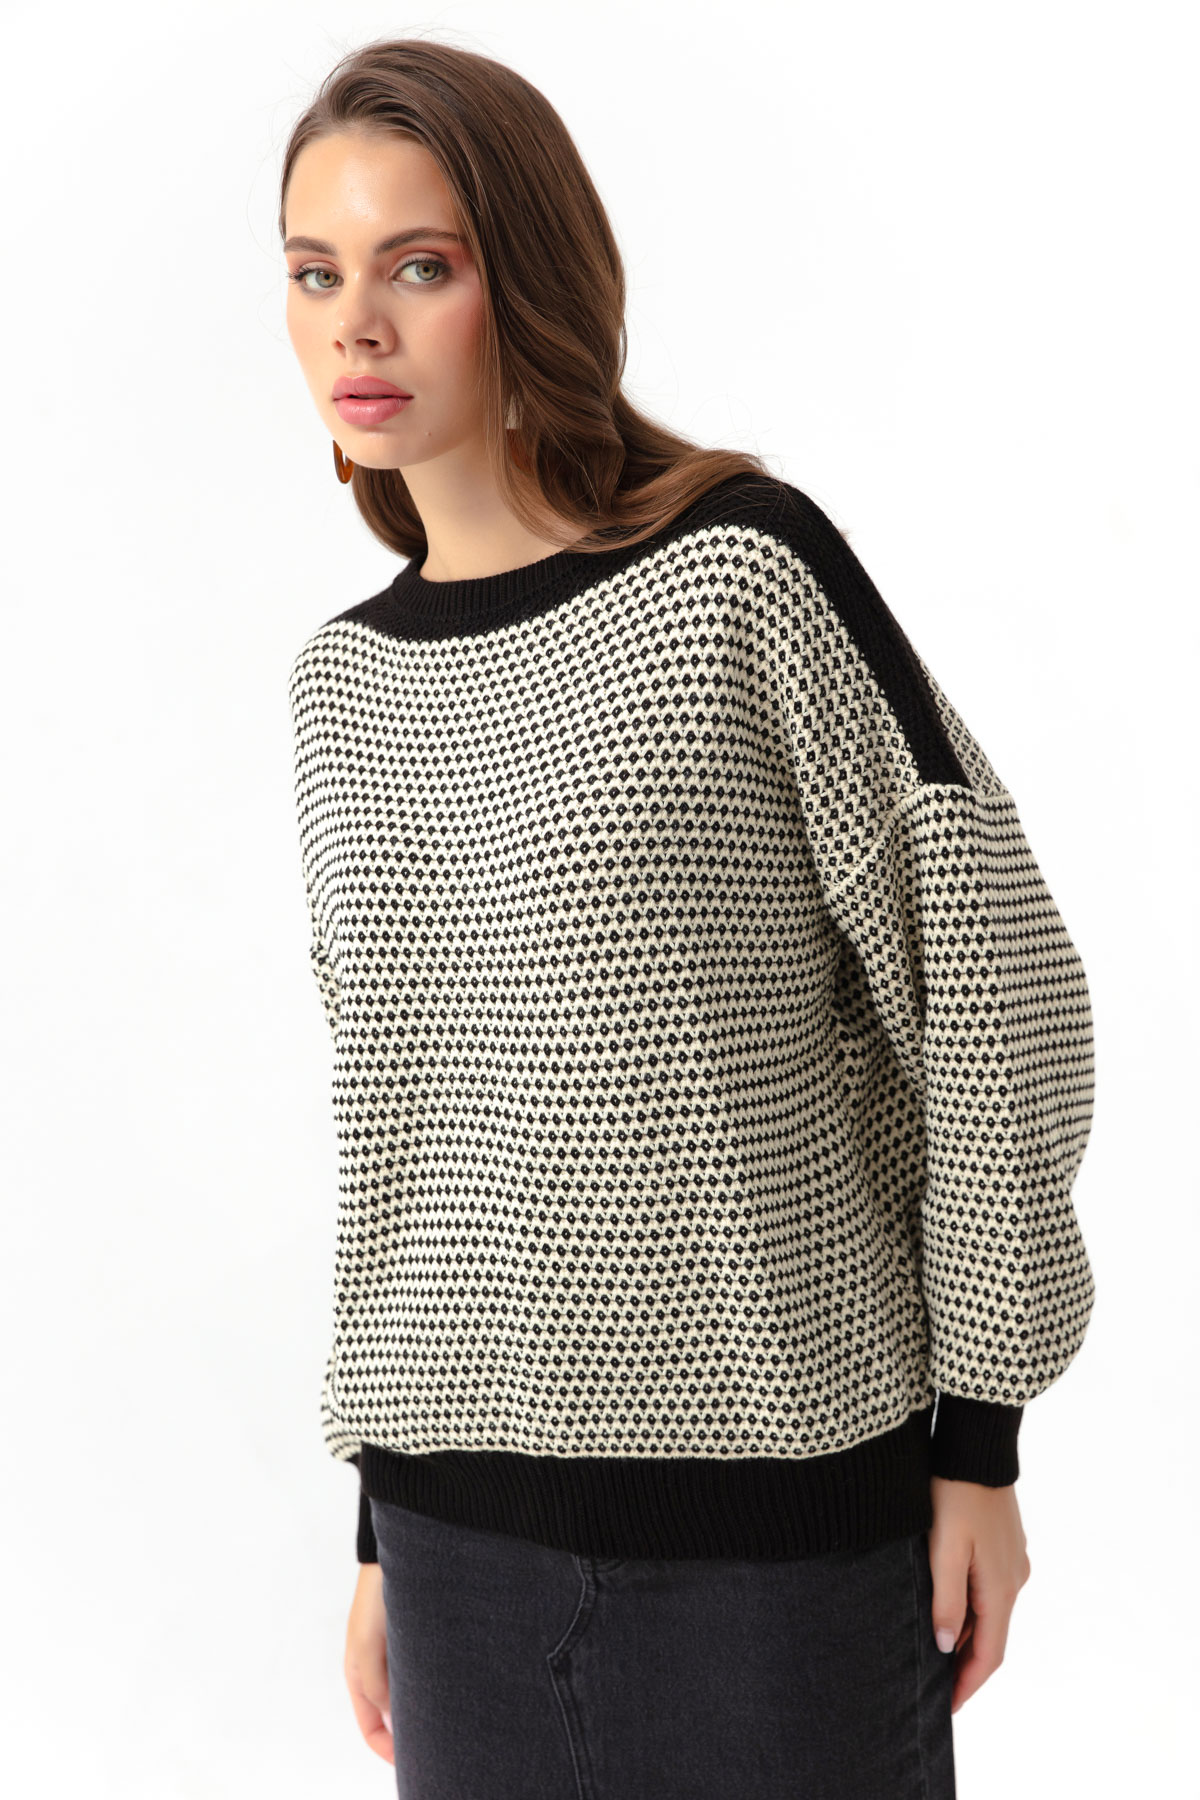 Women's Black Boat Neck Knitwear Sweater